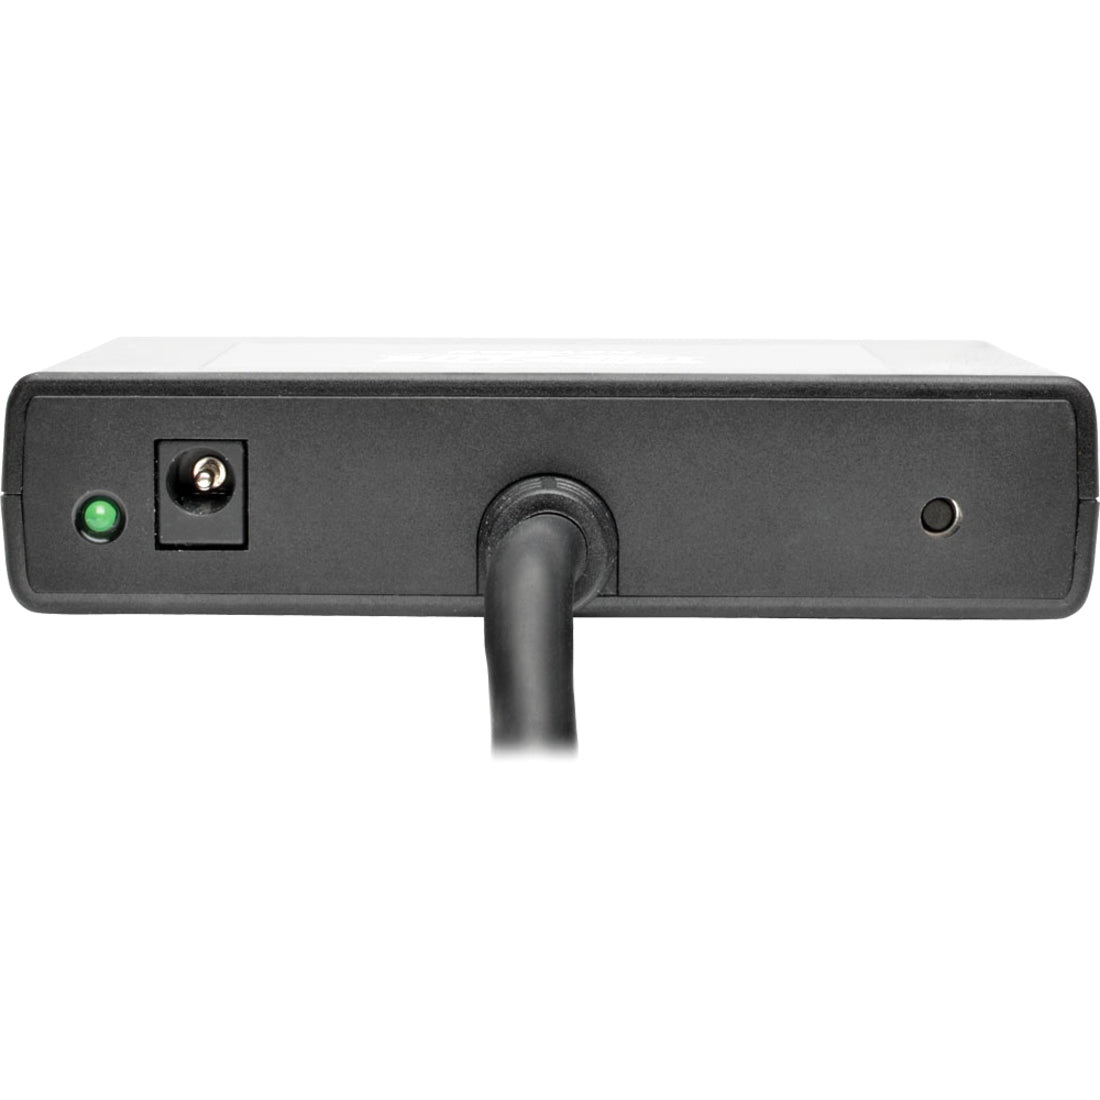 Tripp Lite B156-003-V2 3-Port DisplayPort 1.2 Multi-Stream Transport (MST)Hub, 4K UHD Signal Splitter